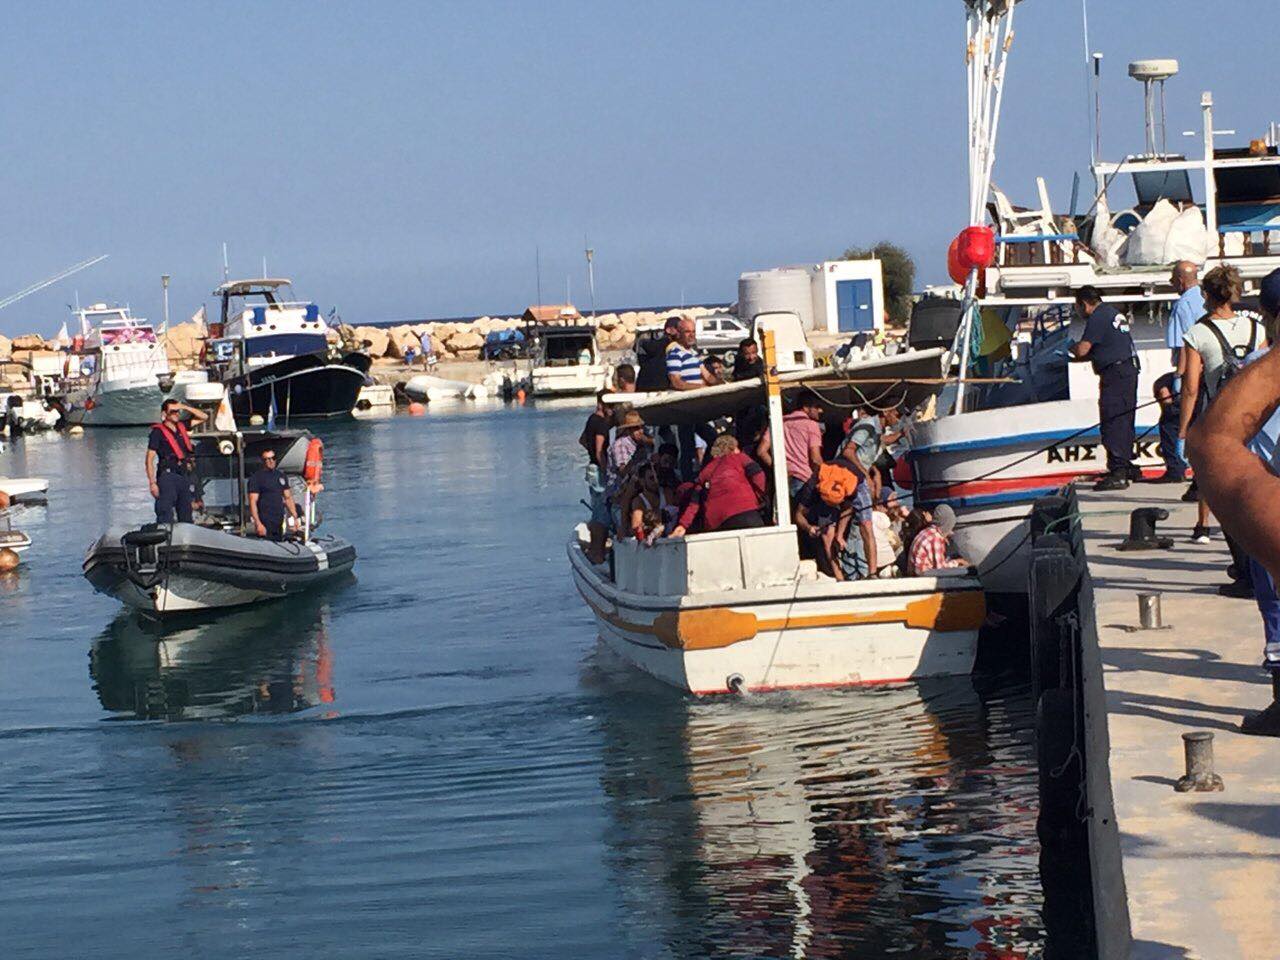 Νέο πλοιάριο με μετανάστες εντοπίστηκε ανοικτά του Κάβο Γκρέκο – Στη Λάρνακα το πλοιάριο με τους 32 μετανάστες